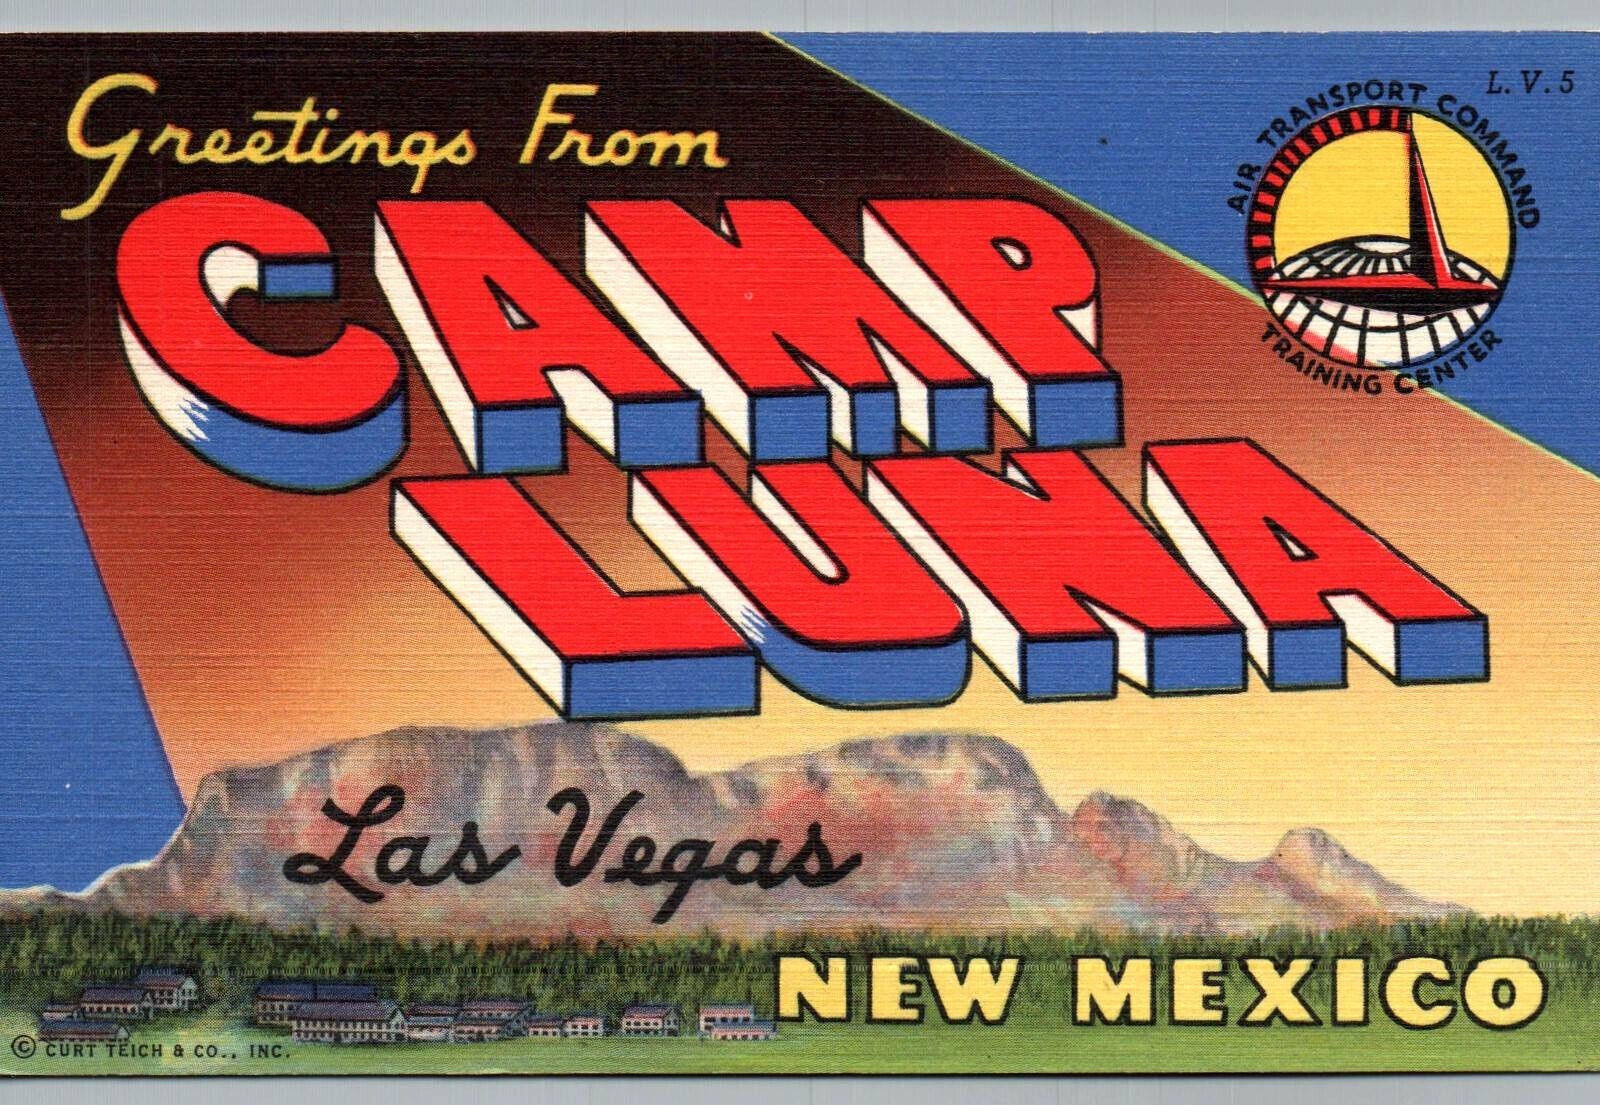 Camp Luna Air Transport Las Vegas New Mexico Large Letter Linen Postcard NM